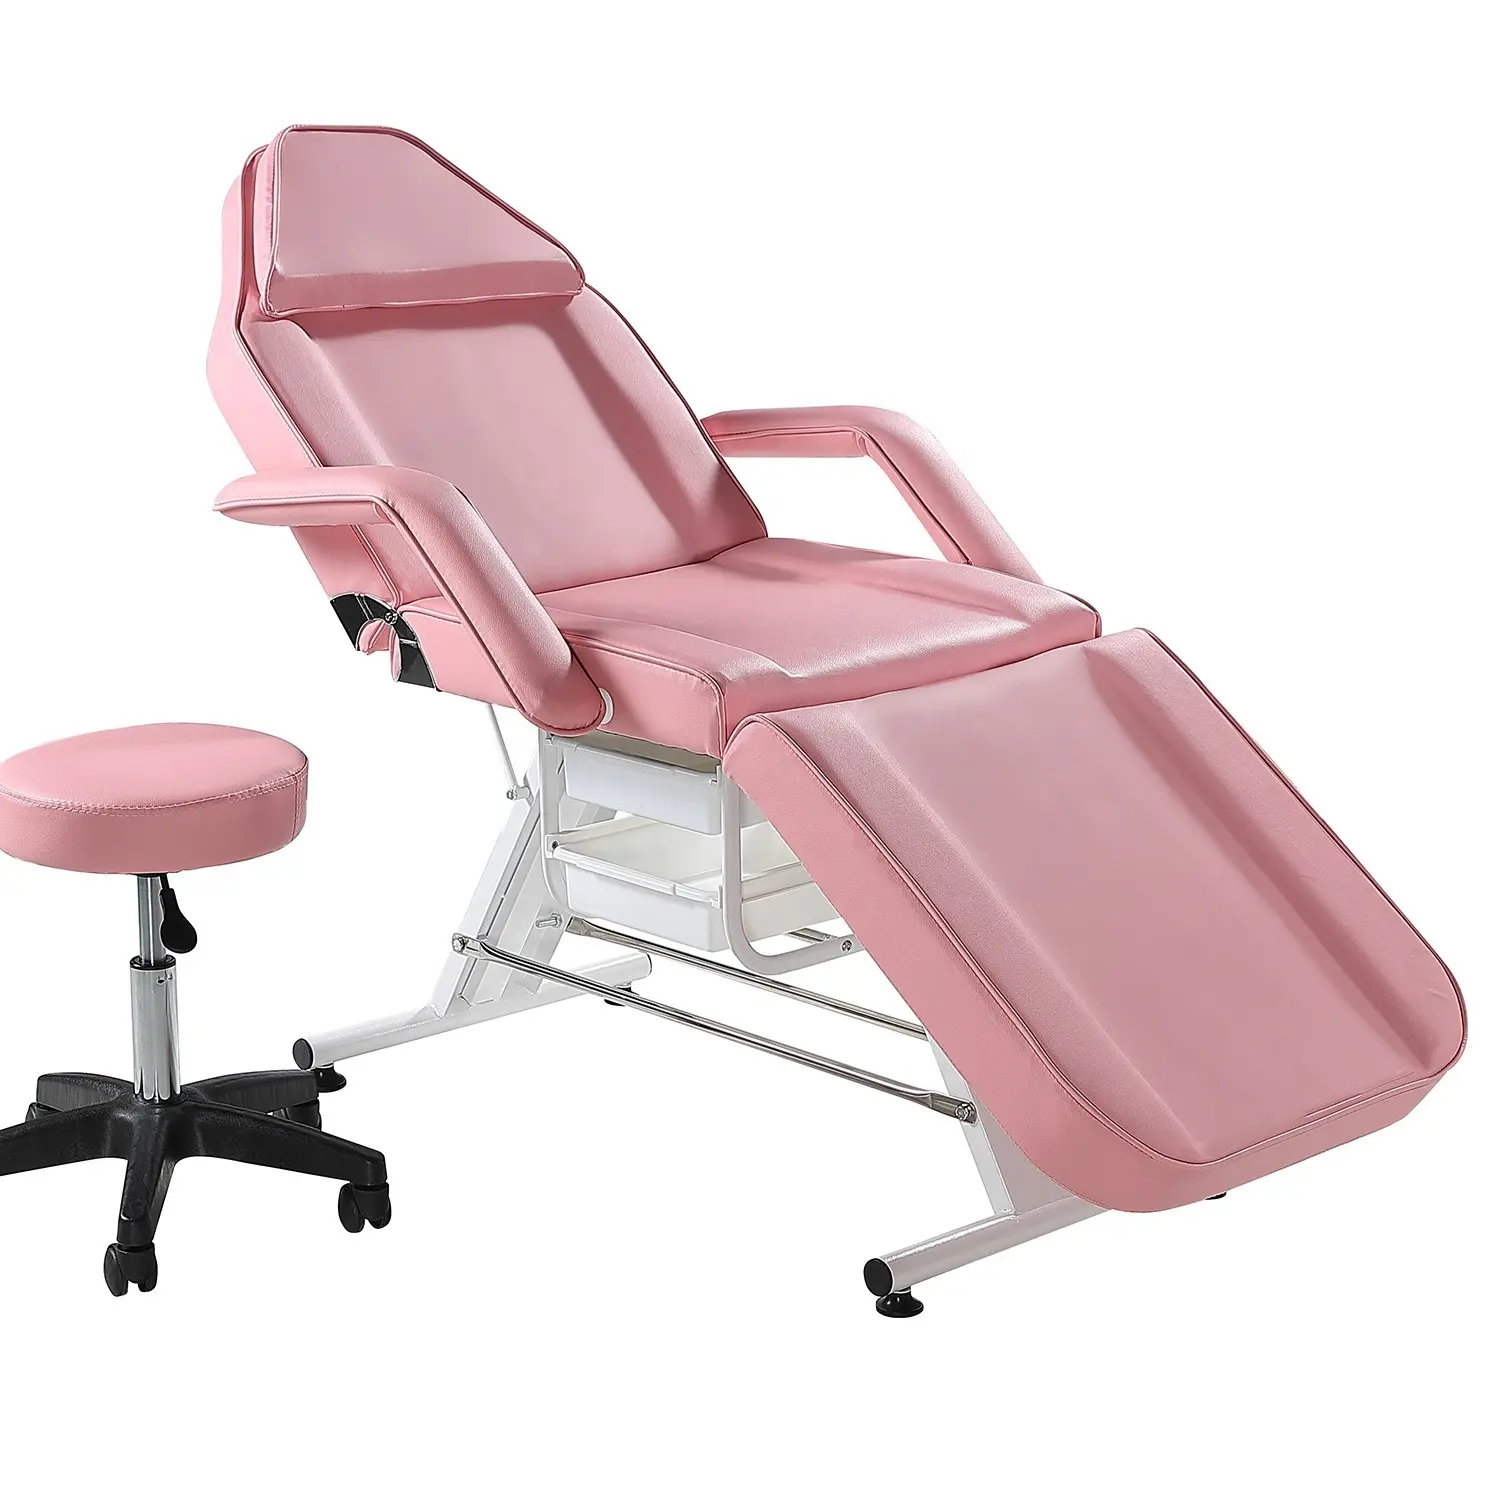 Tempat tidur Salon kecantikan wajah, merah muda dapat disesuaikan multifungsi kursi tato lipat tempat tidur pijat